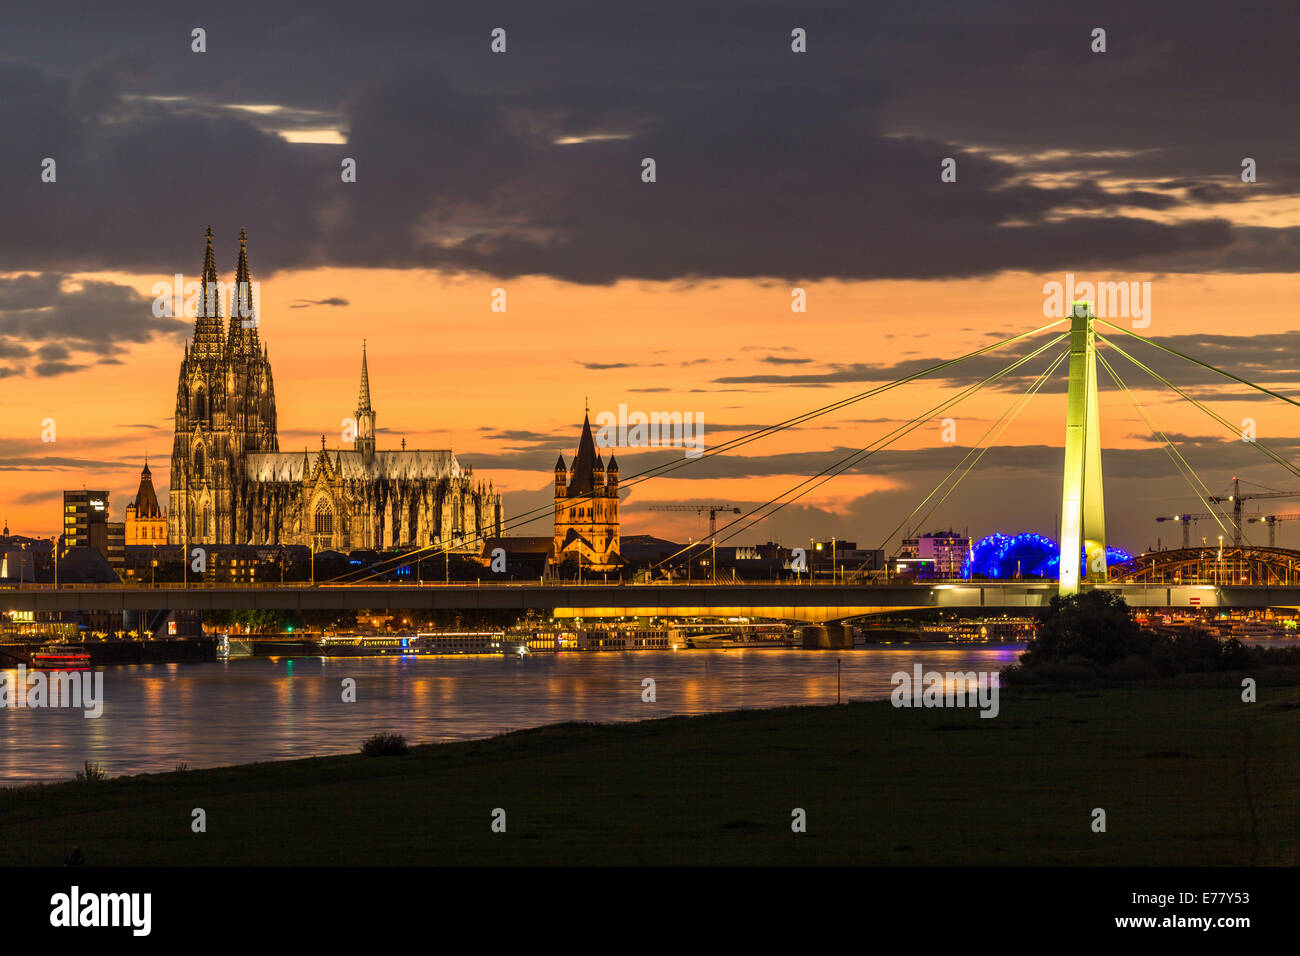 Vue panoramique sur le Rhin avec la cathédrale de Cologne, pont Severinsbrücke, du Musical Dome et Eglise Grand St-martin Banque D'Images